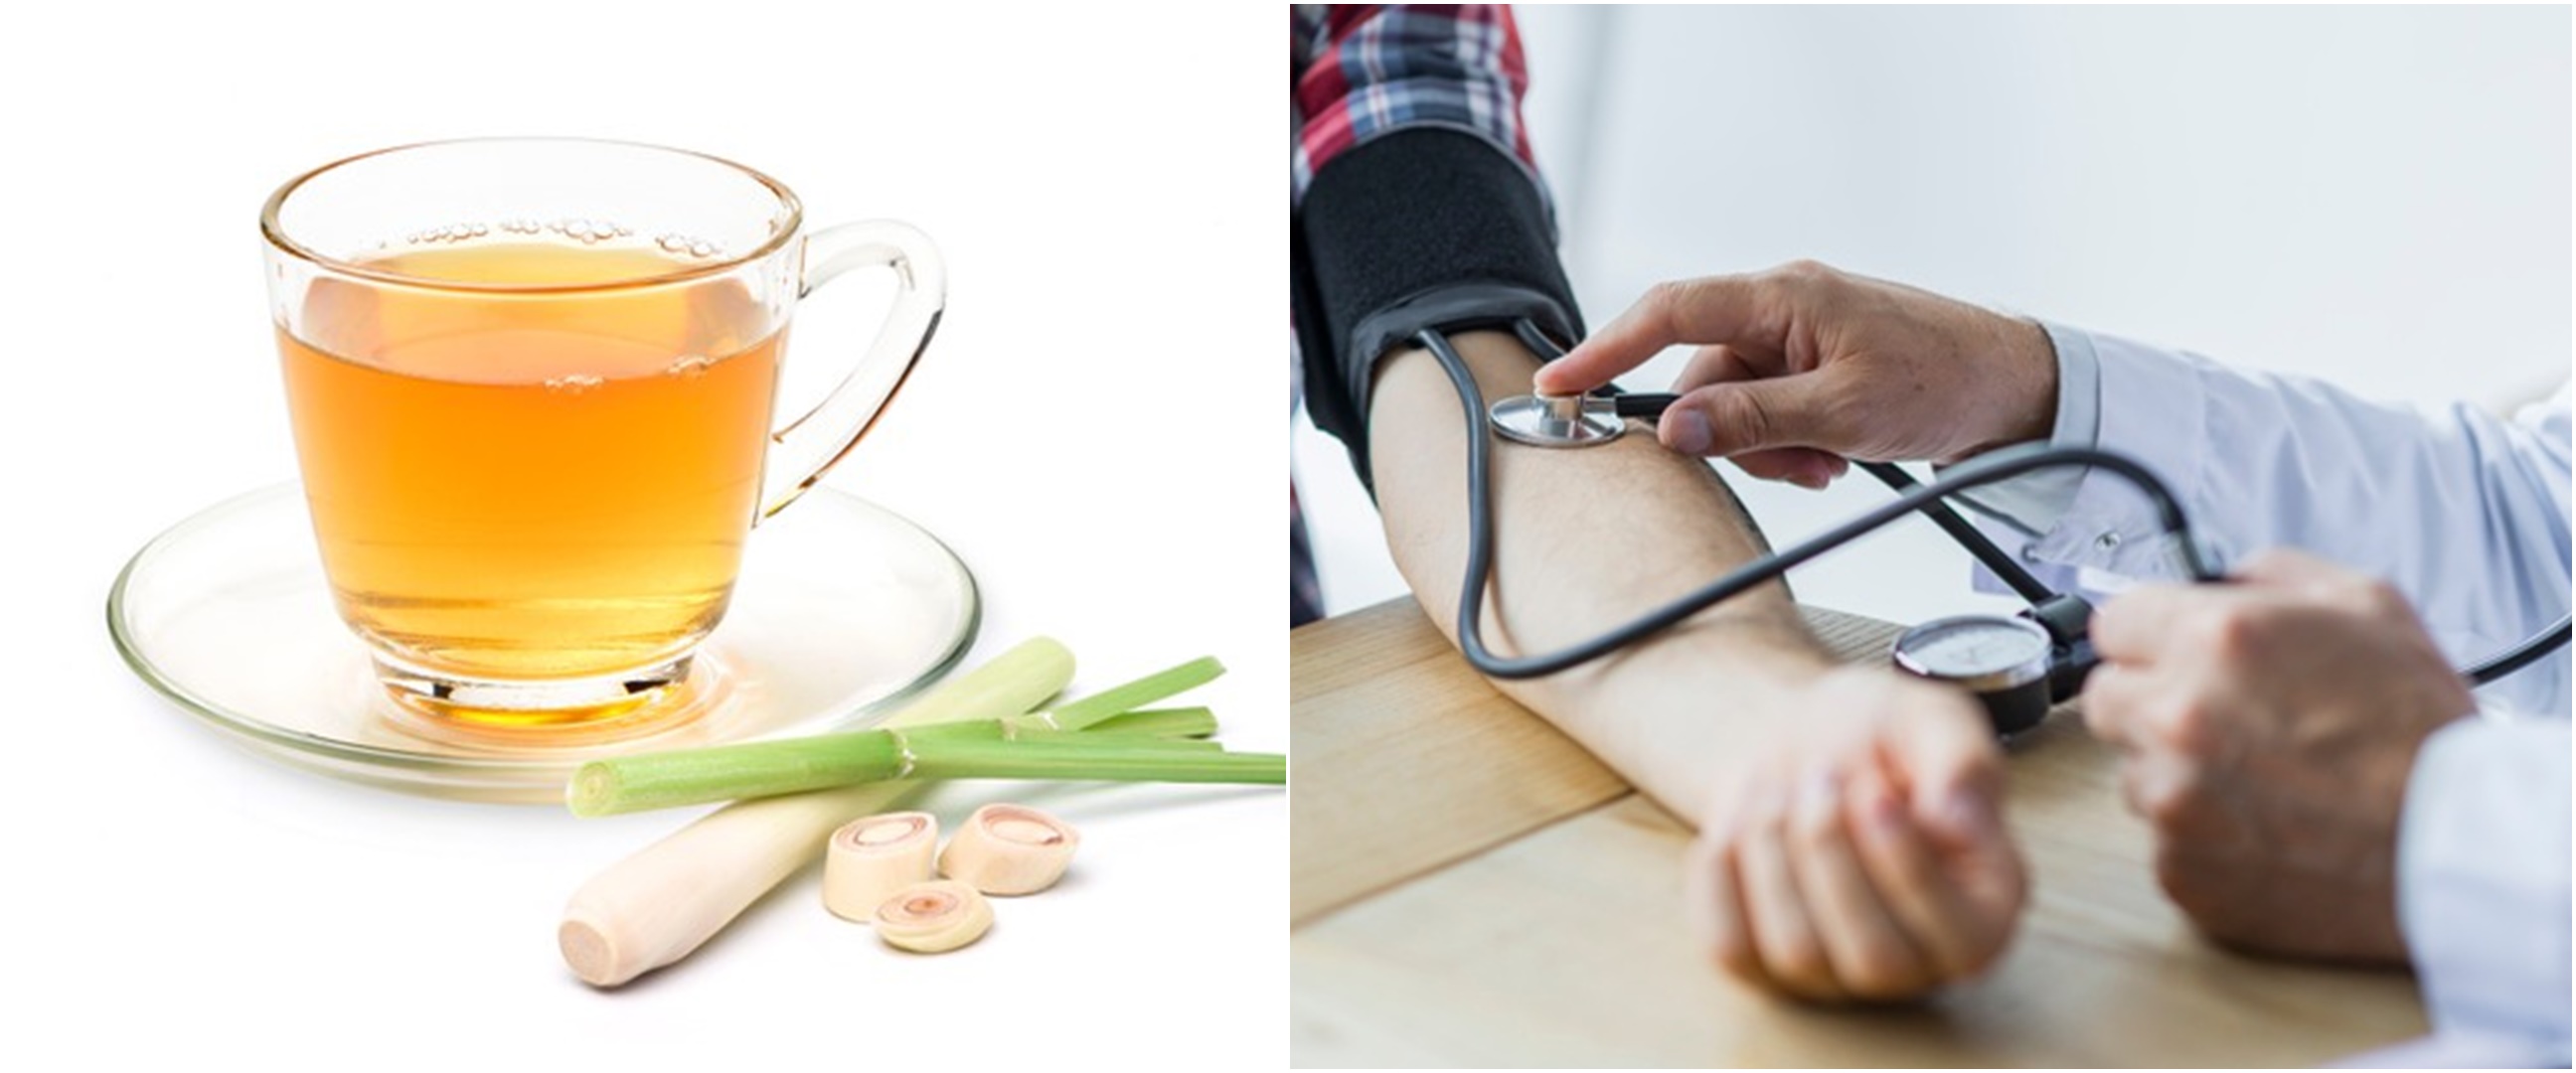 10 Manfaat mengonsumsi teh serai bagi kesehatan, turunkan darah tinggi